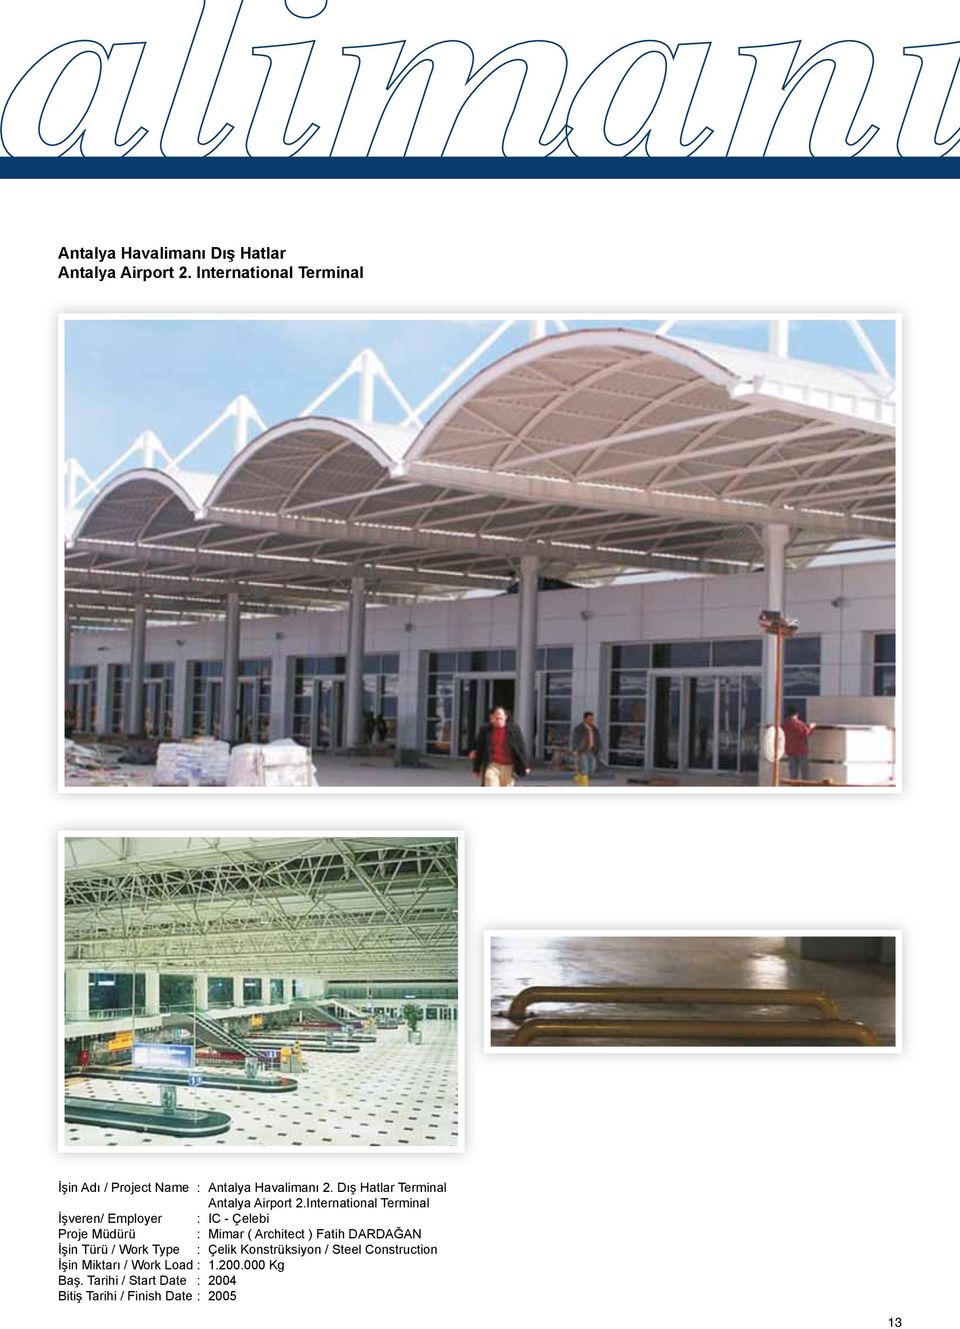 International Terminal İşveren/ Employer : IC - Çelebi Proje Müdürü : Mimar ( Architect ) Fatih DARDAĞAN